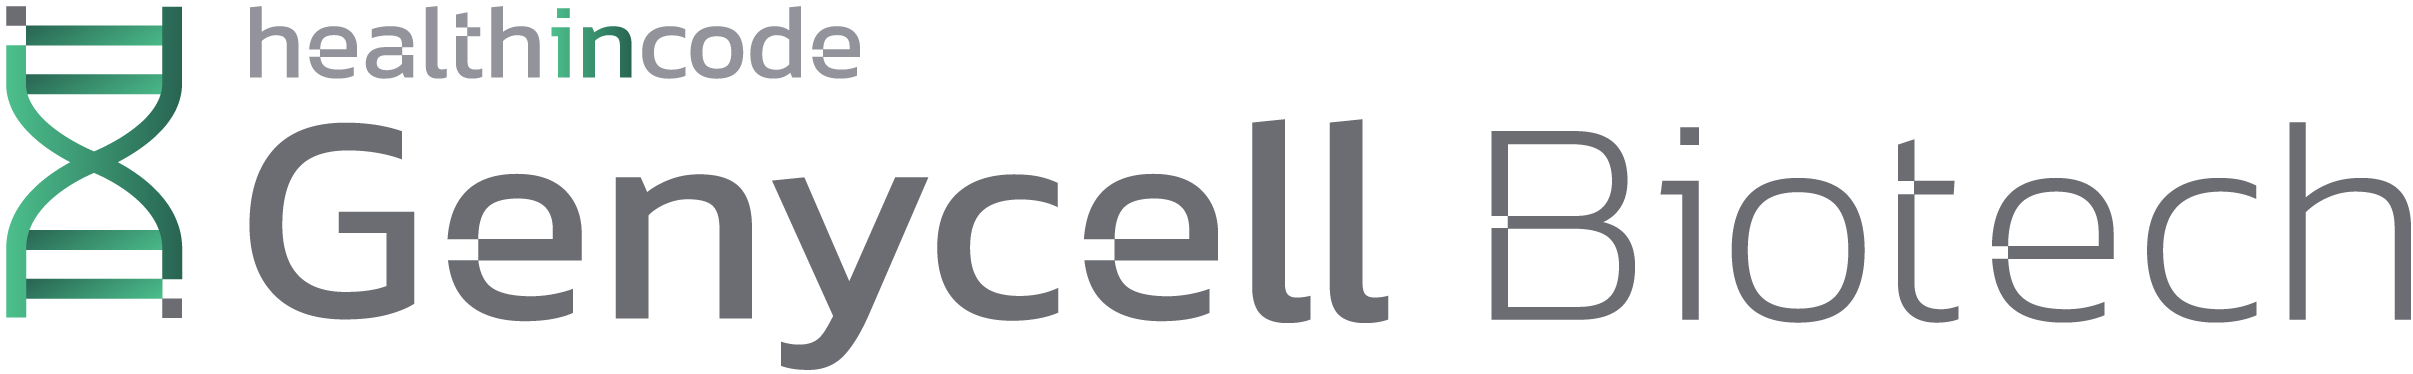 genycell-biotech